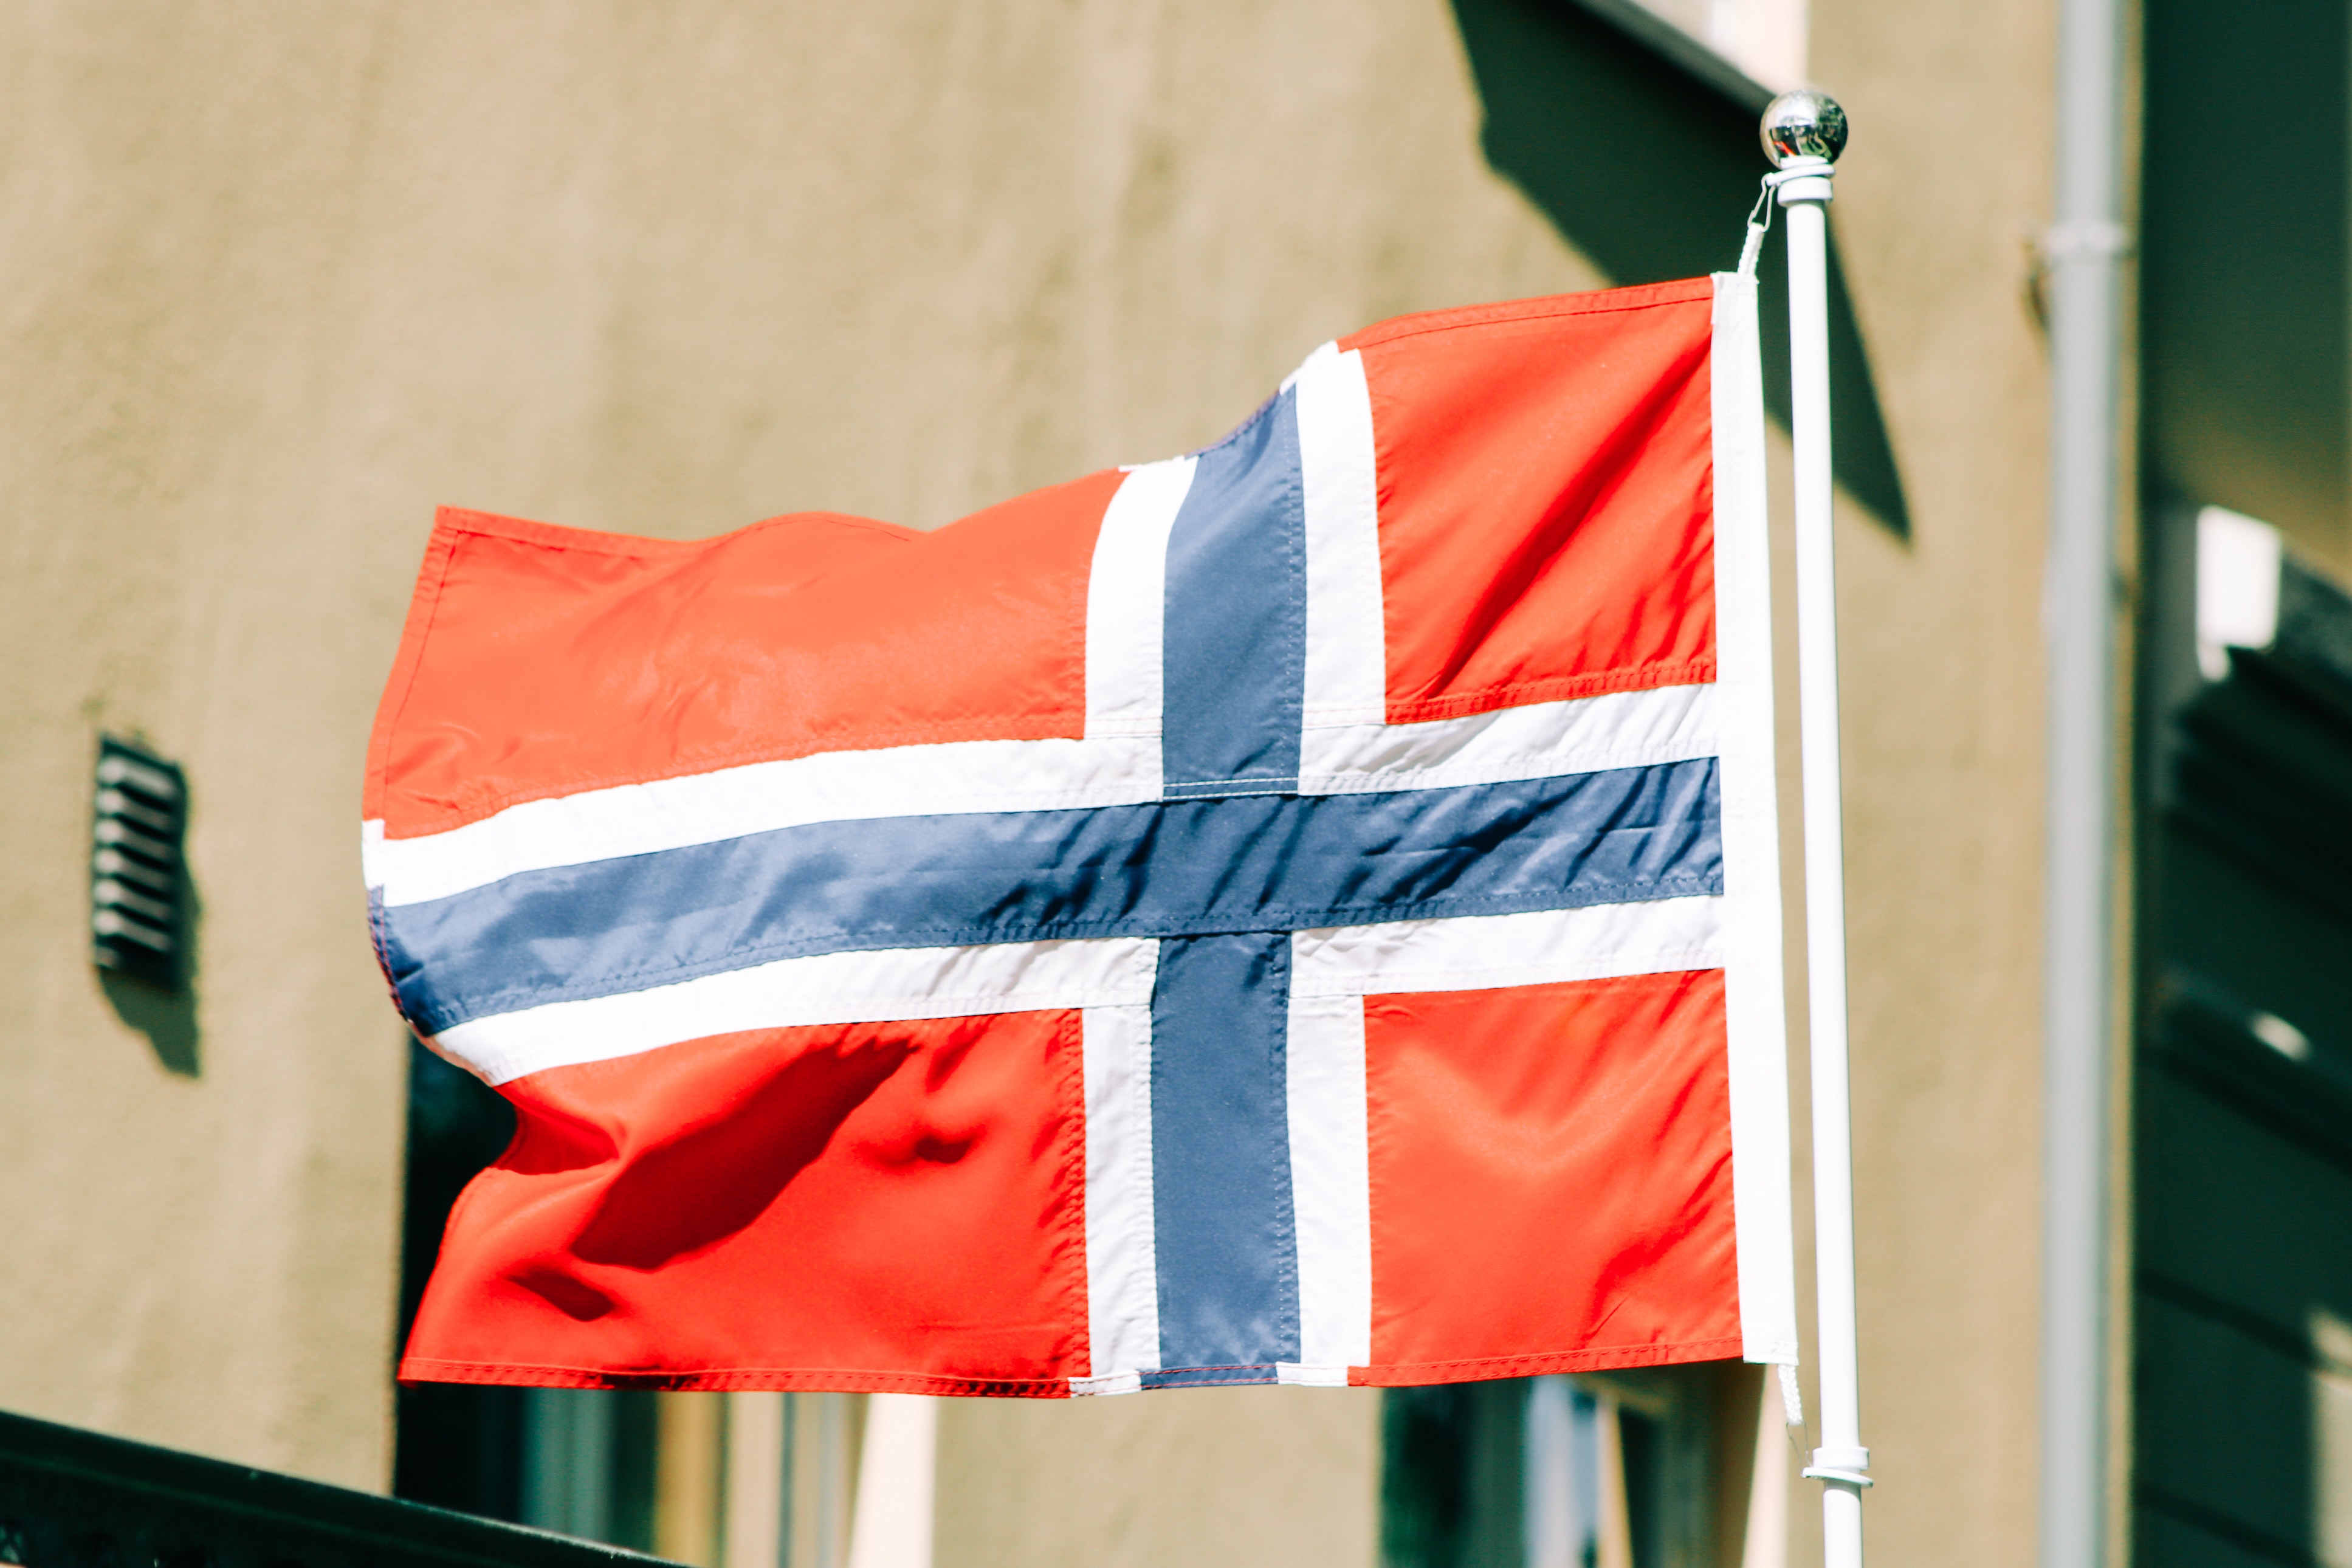 النرويج ترفع مستوى التهديد الإرهابي بعد حادث نادي المثليين في أوسلو